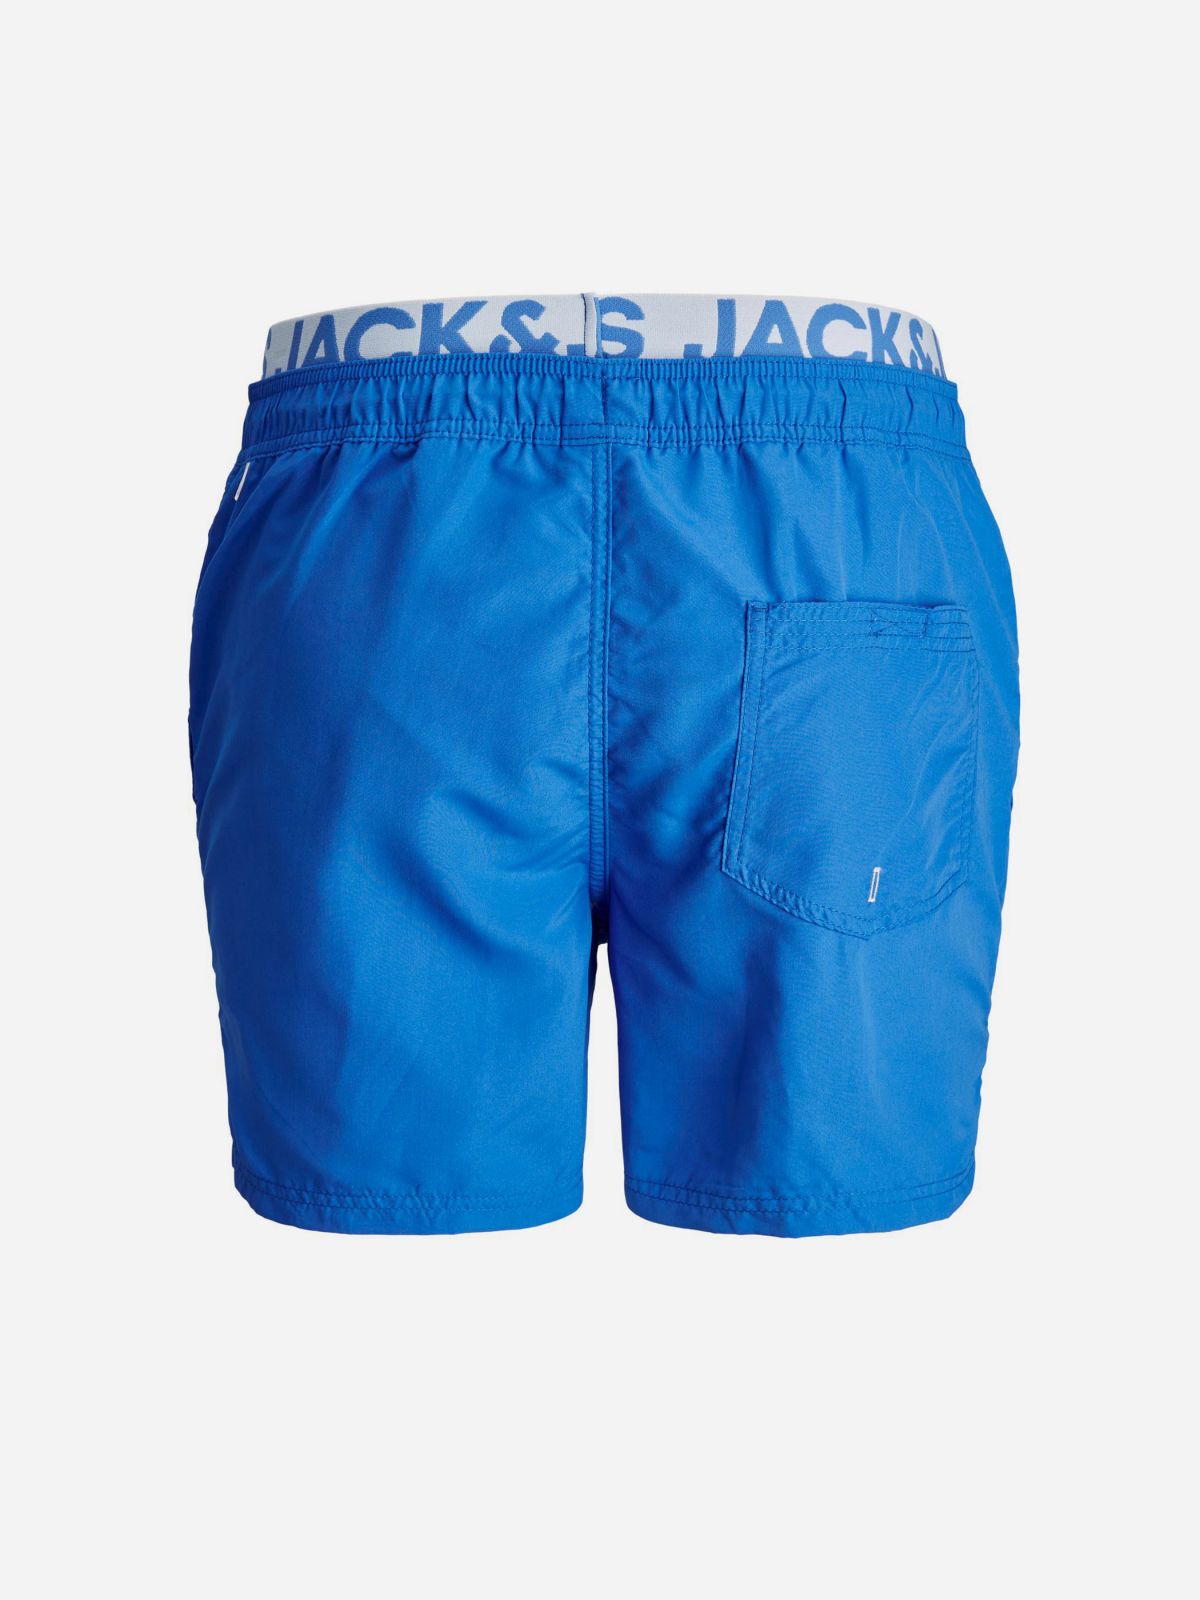  מכנסי בגד ים עם לוגו של JACK AND JONES